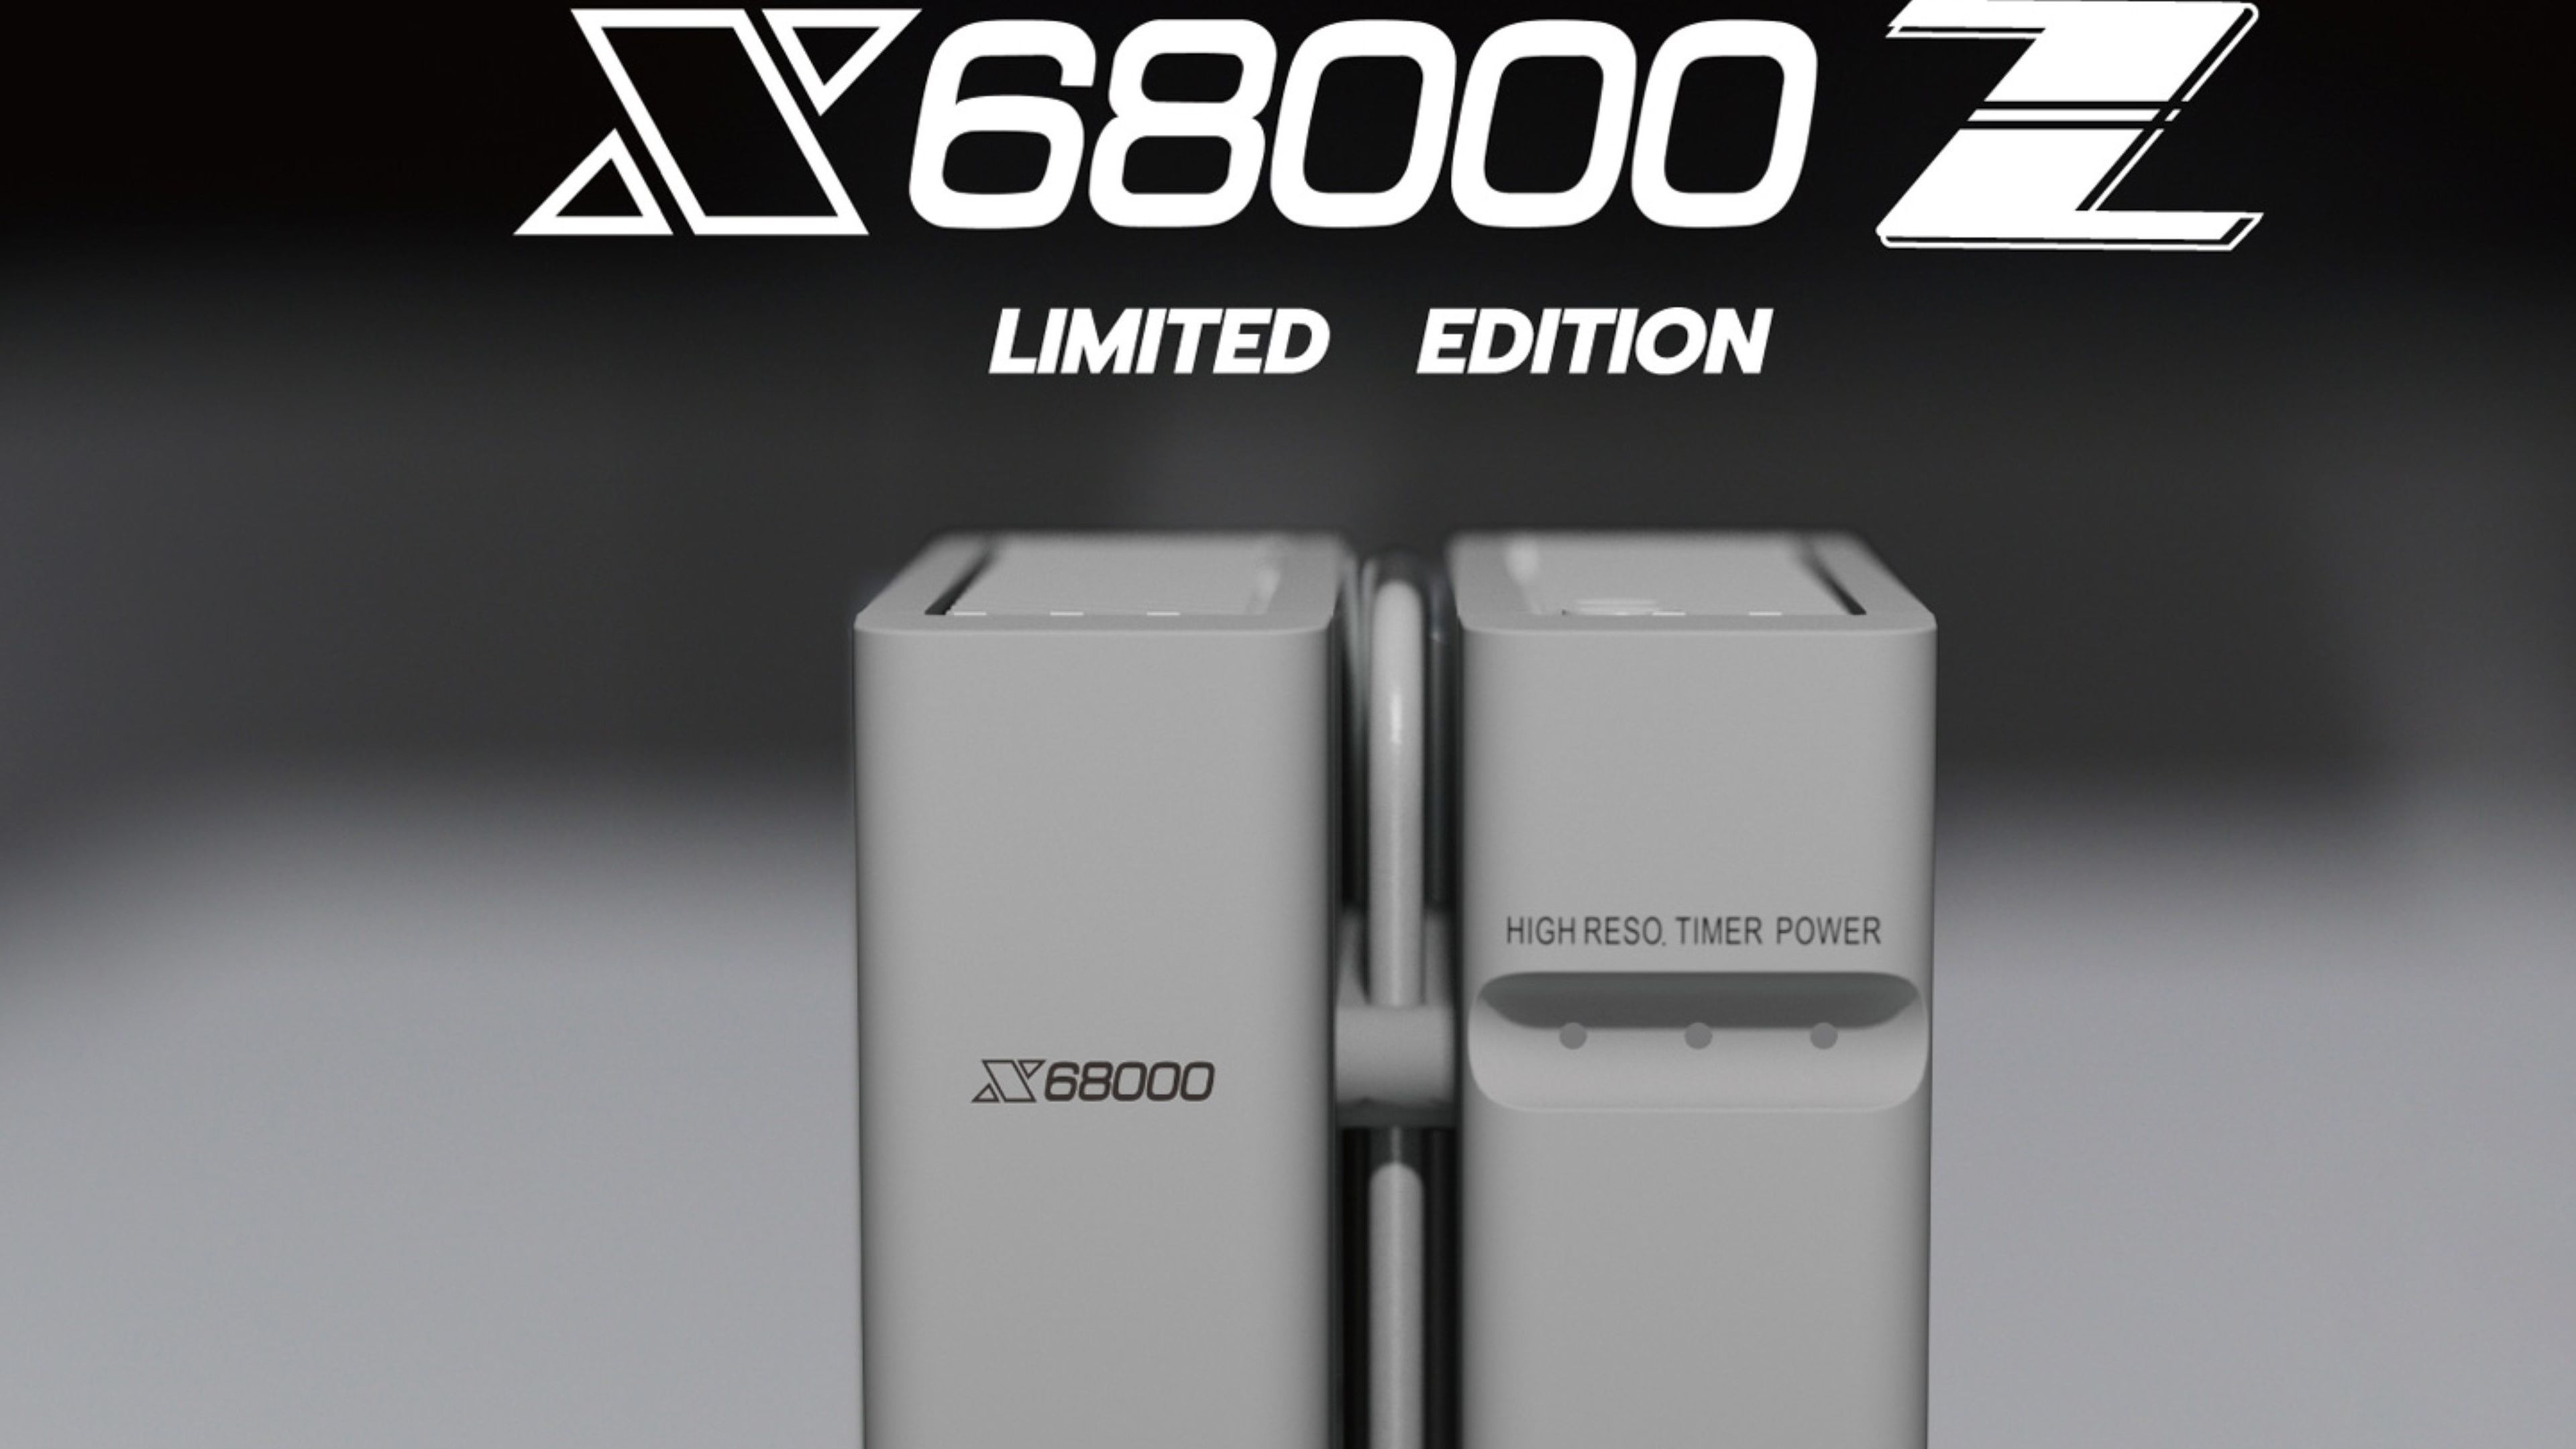 X68000Z mini PC